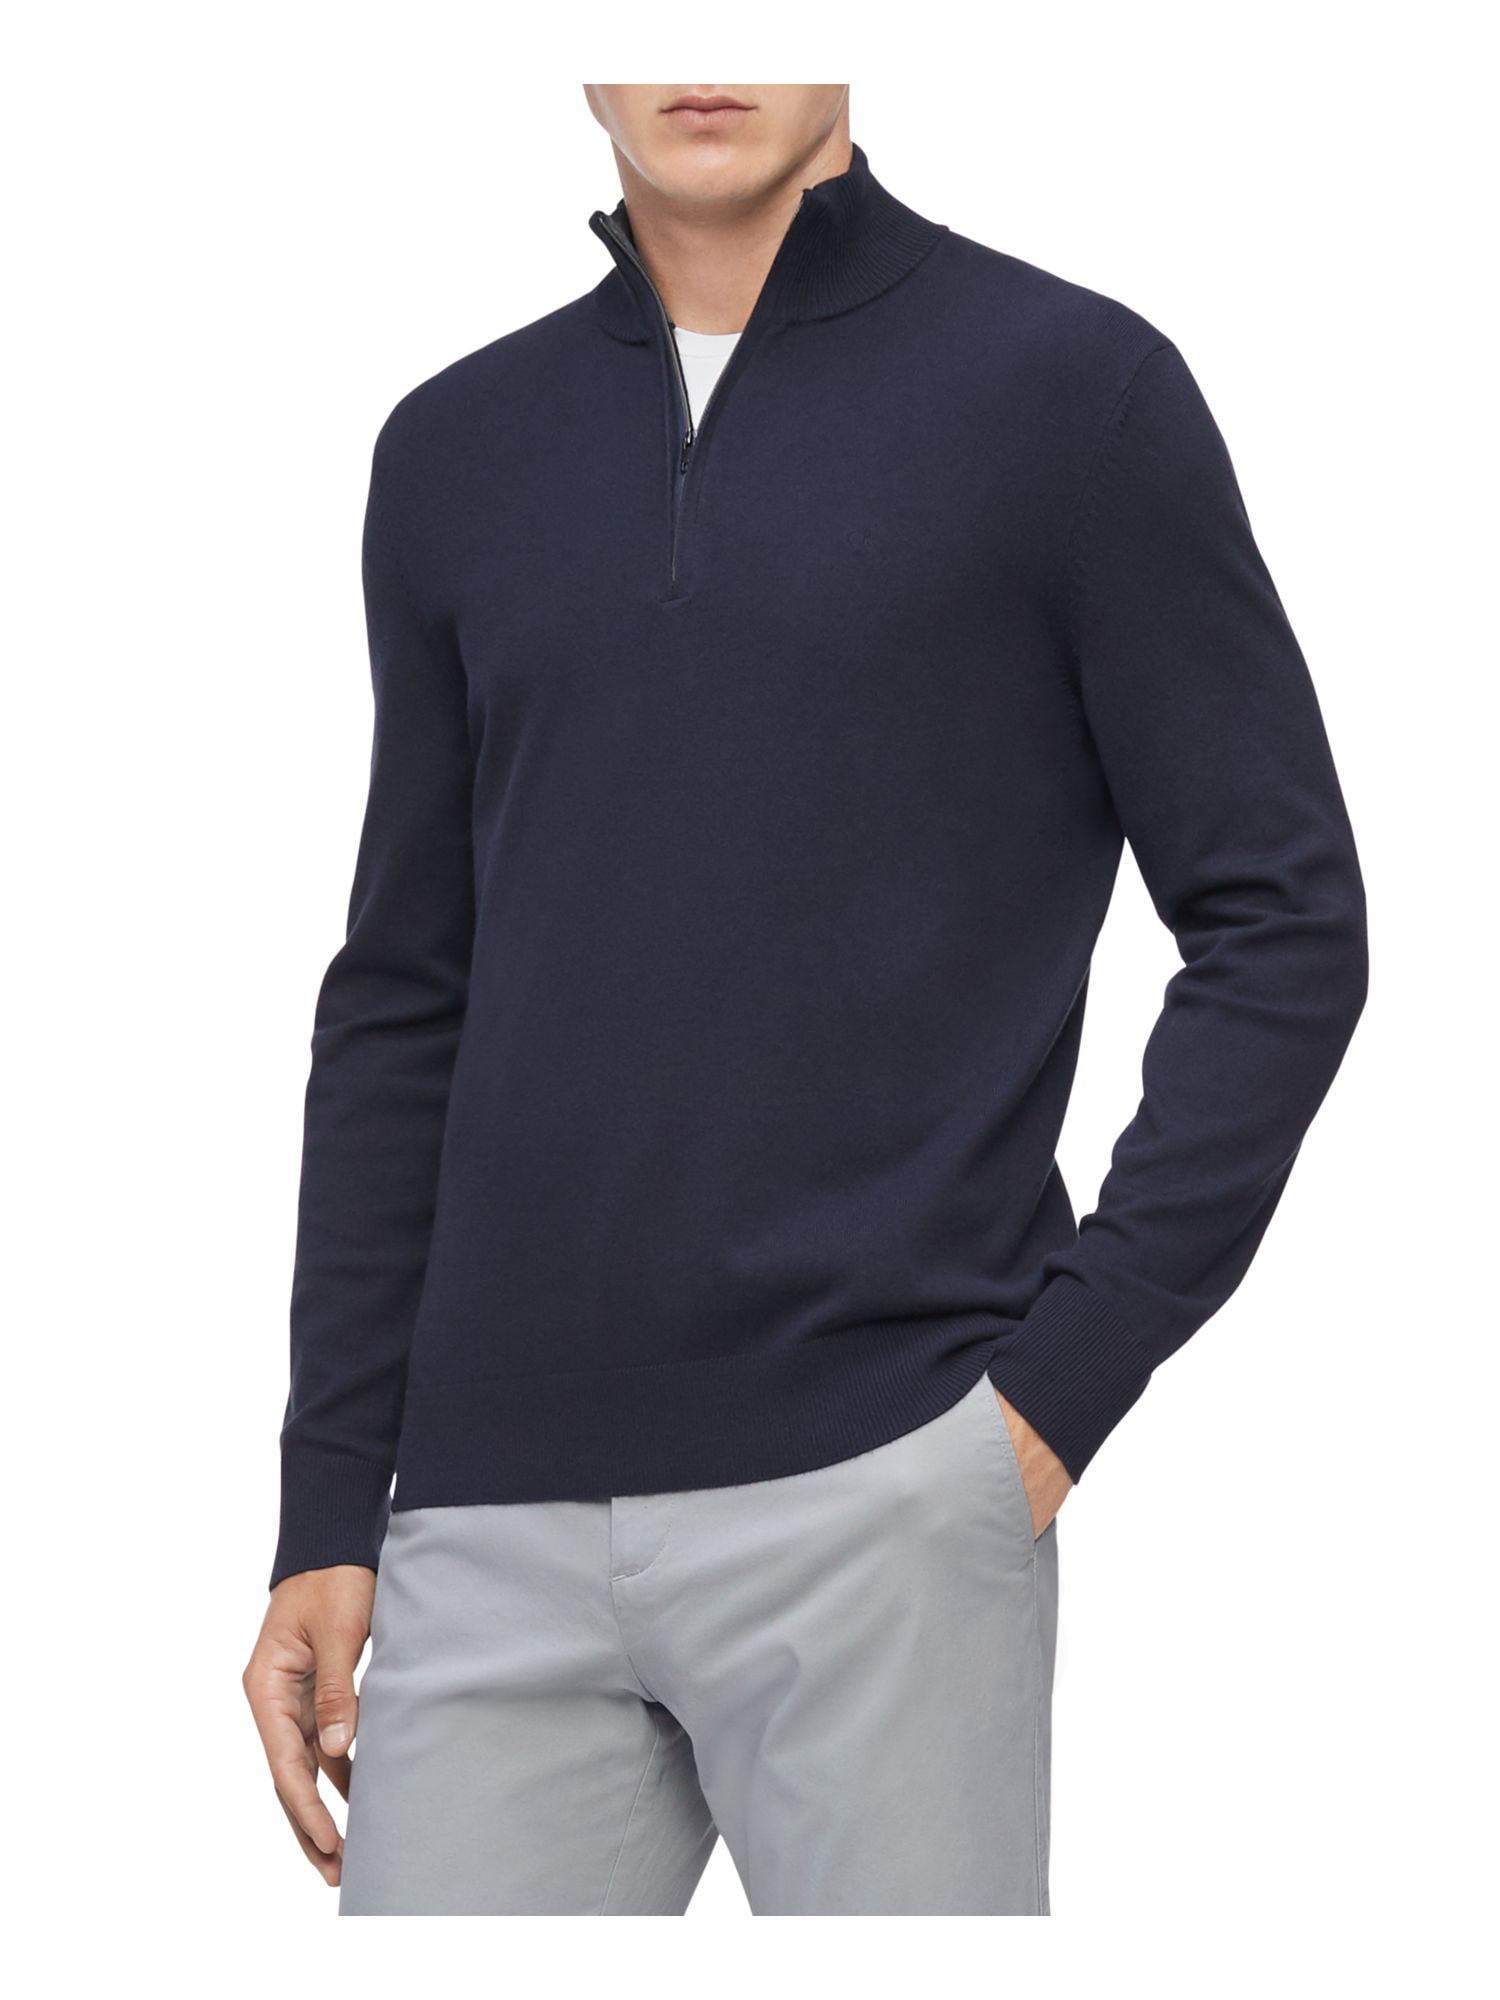 CALVIN KLEIN Mens Blue Lightweight Sweater Quarter-Zip Collared Long Sleeve Pullover L